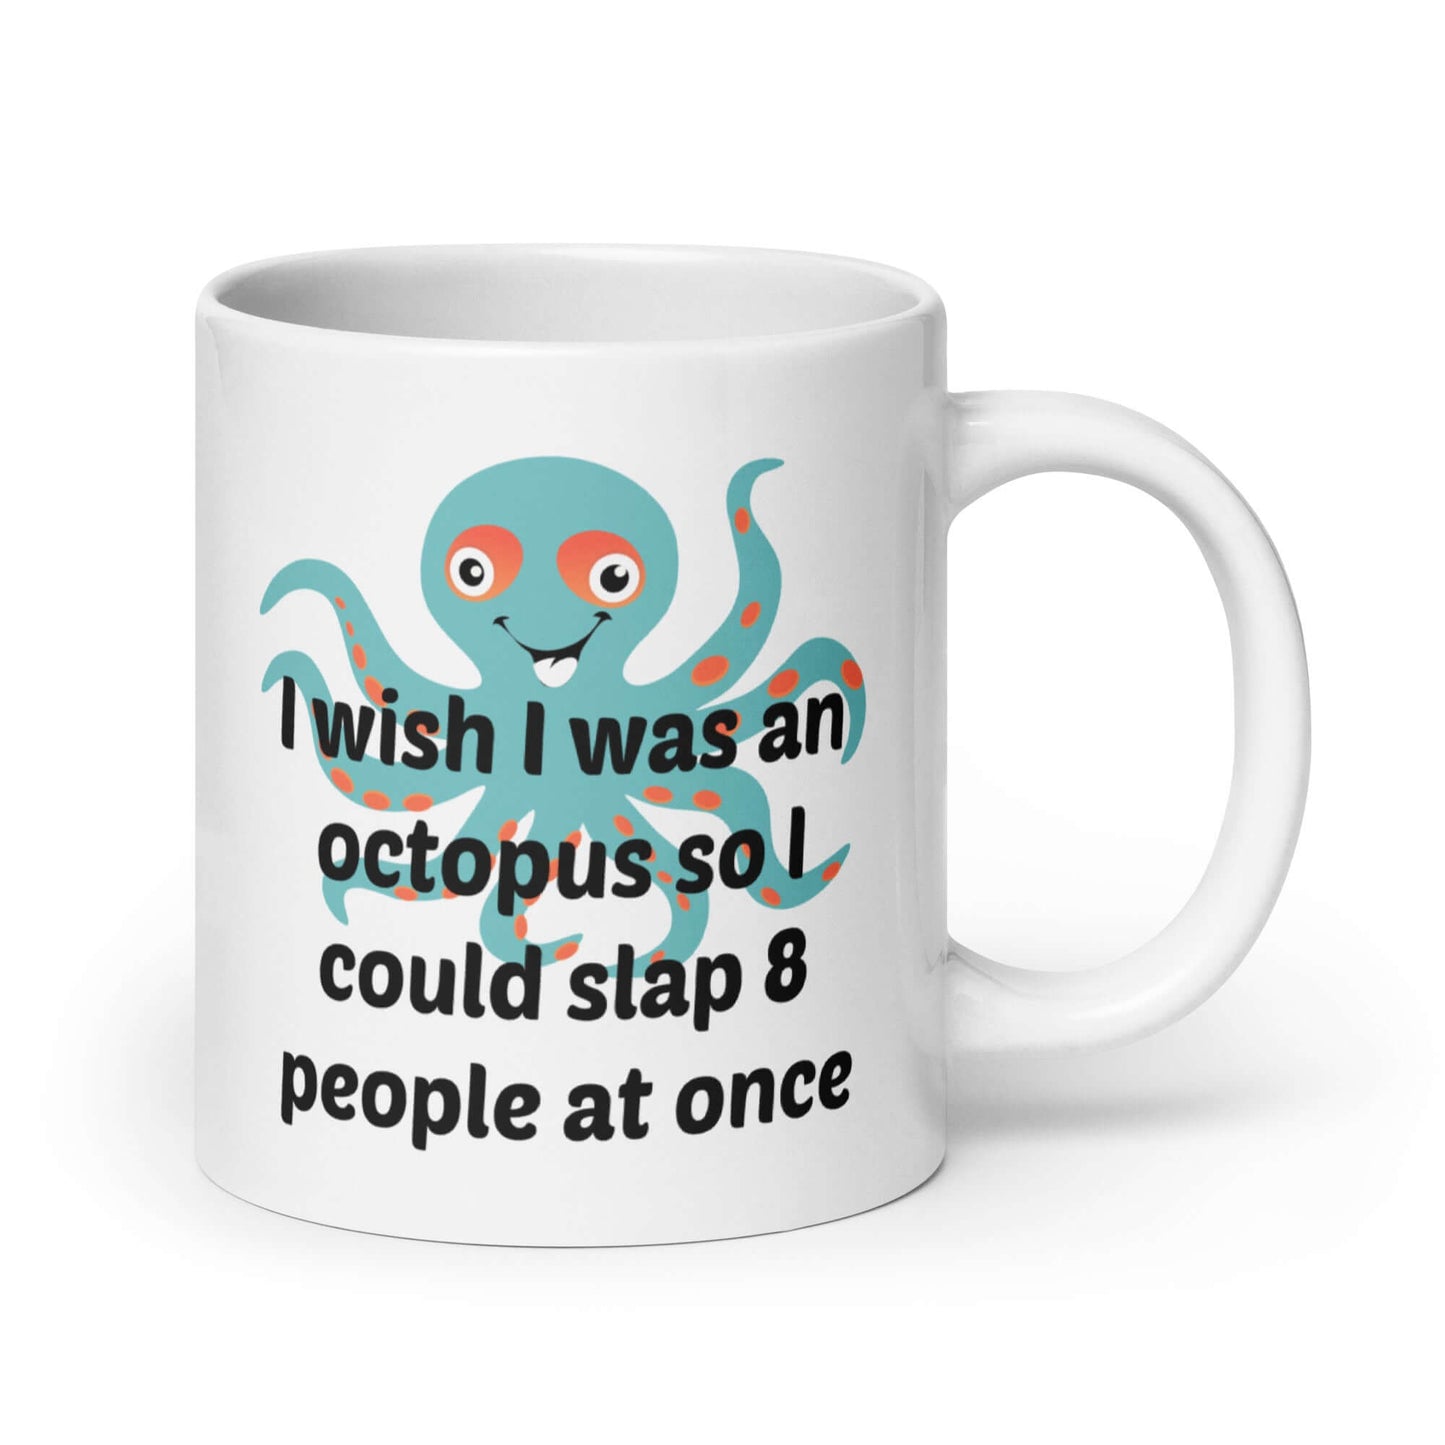 I wish I was an octopus funny mug